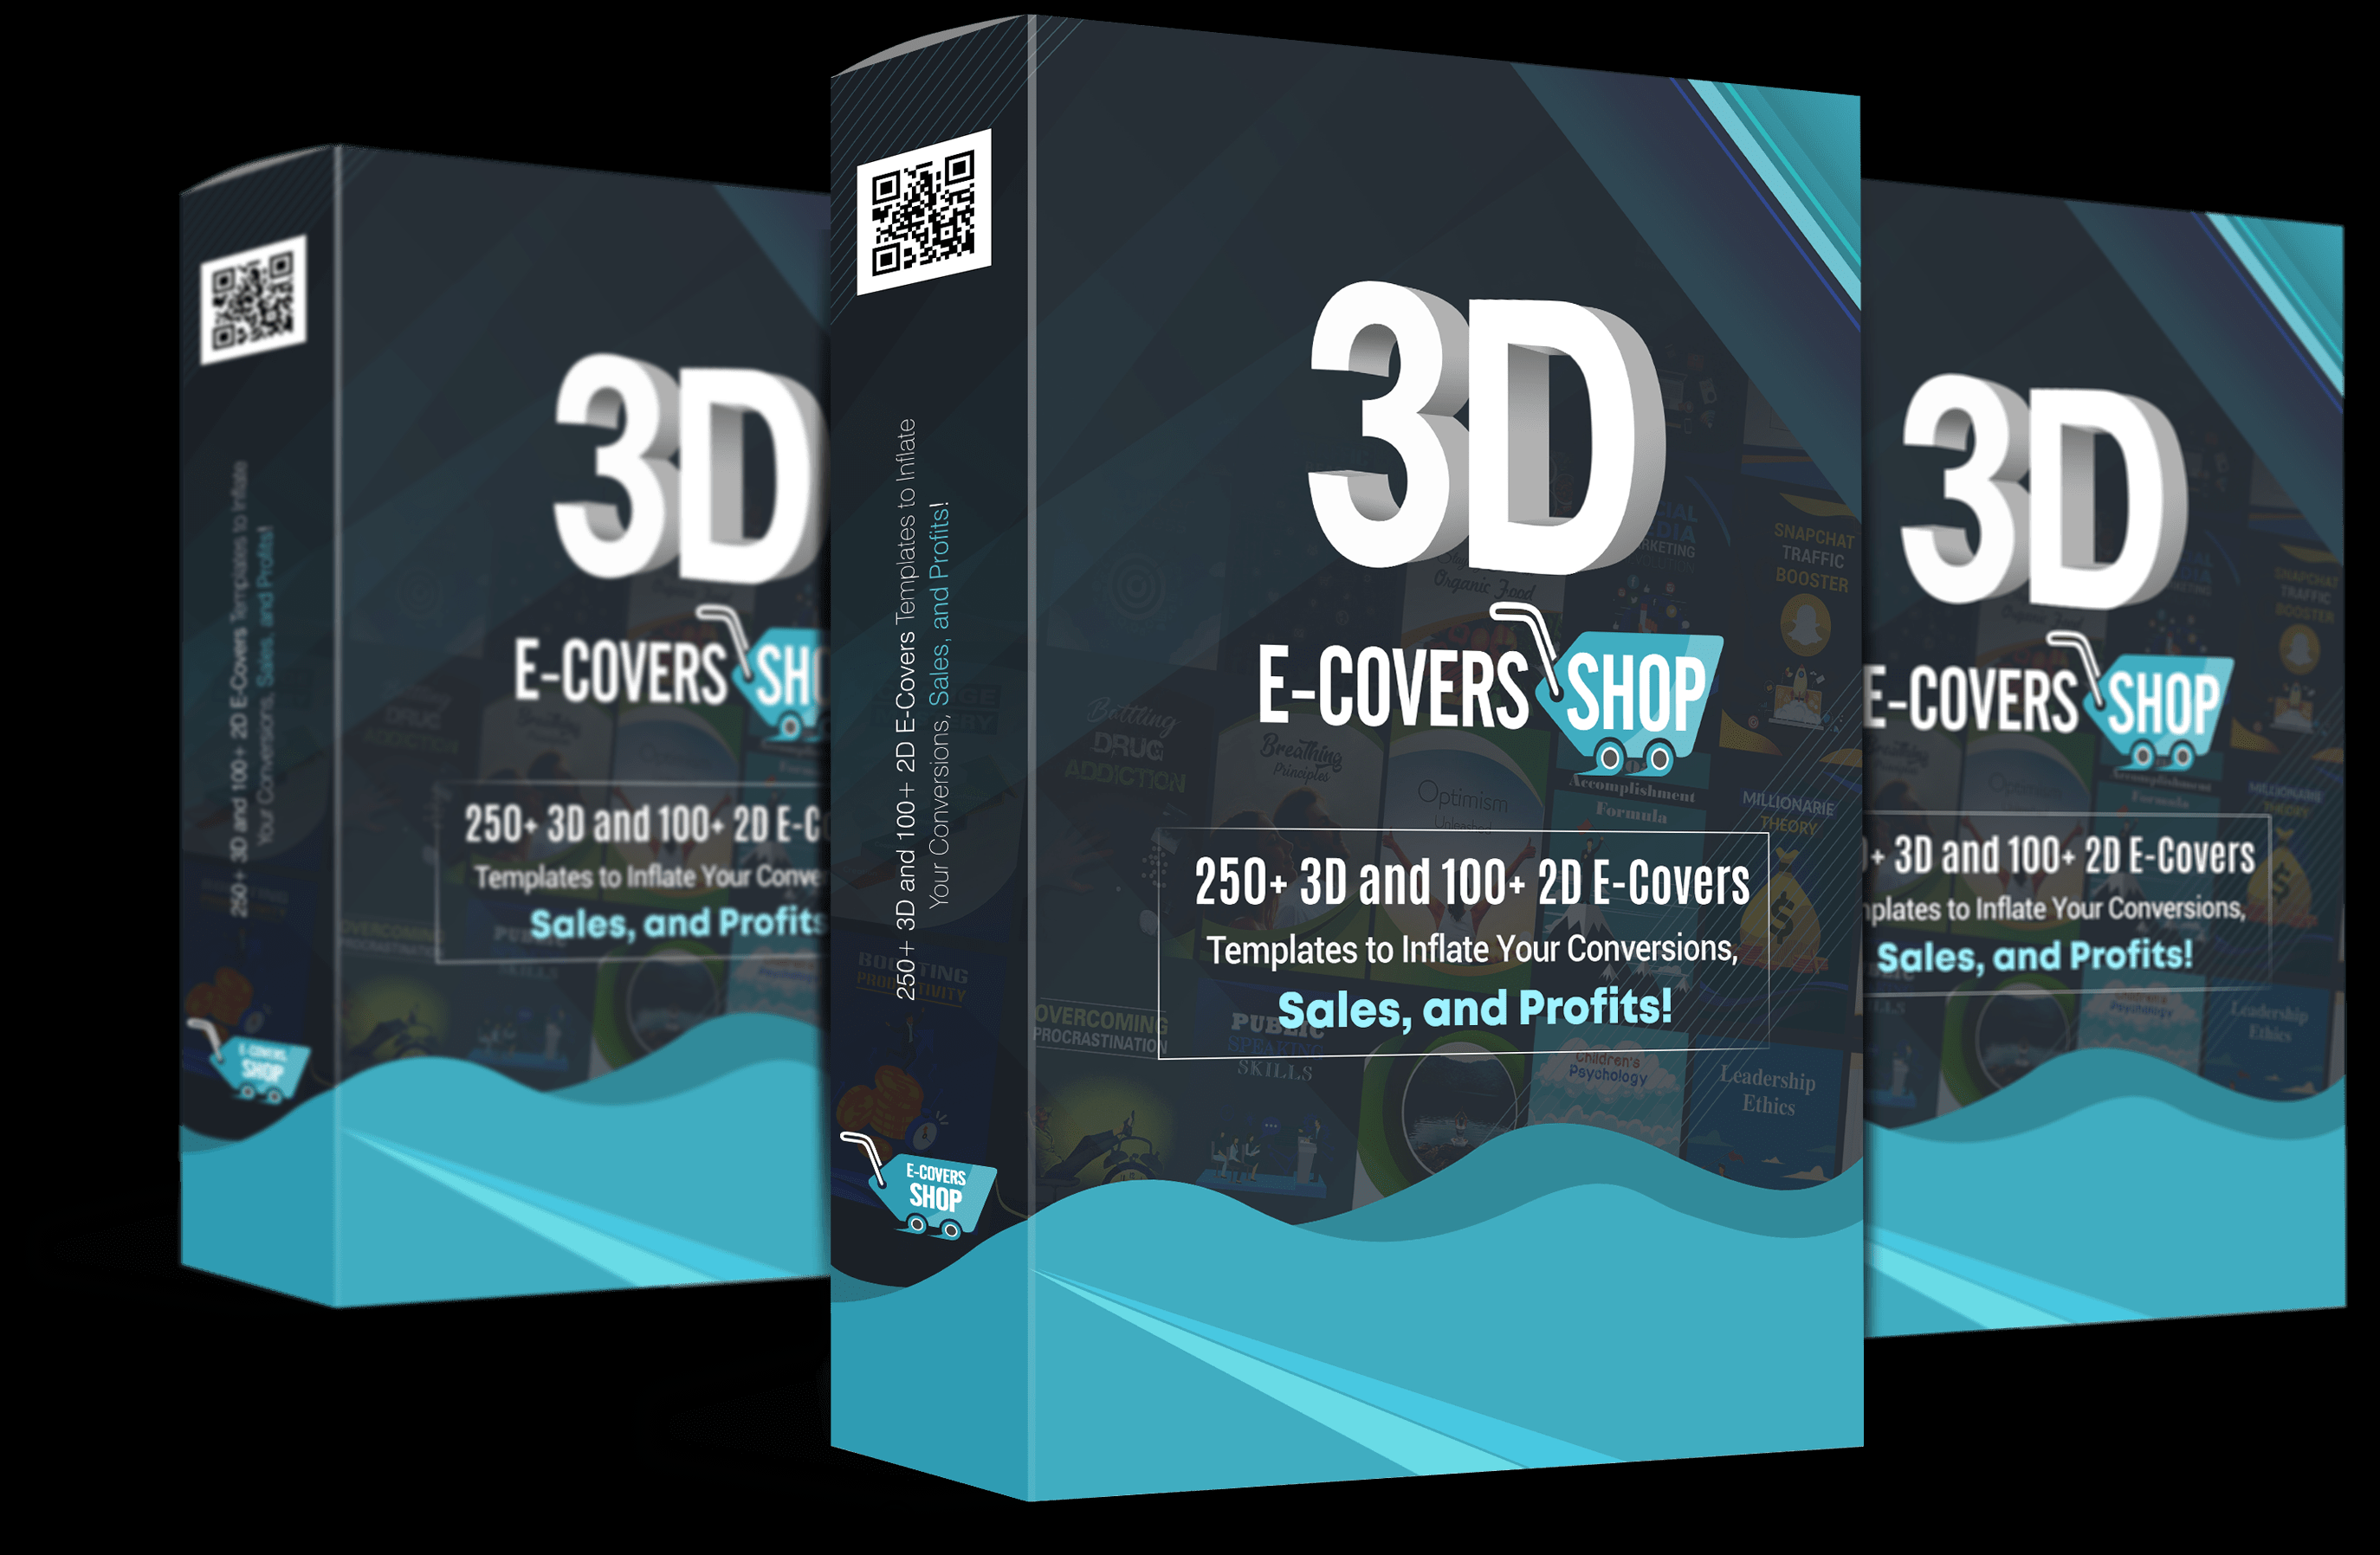 3D E-Covers Shop Review